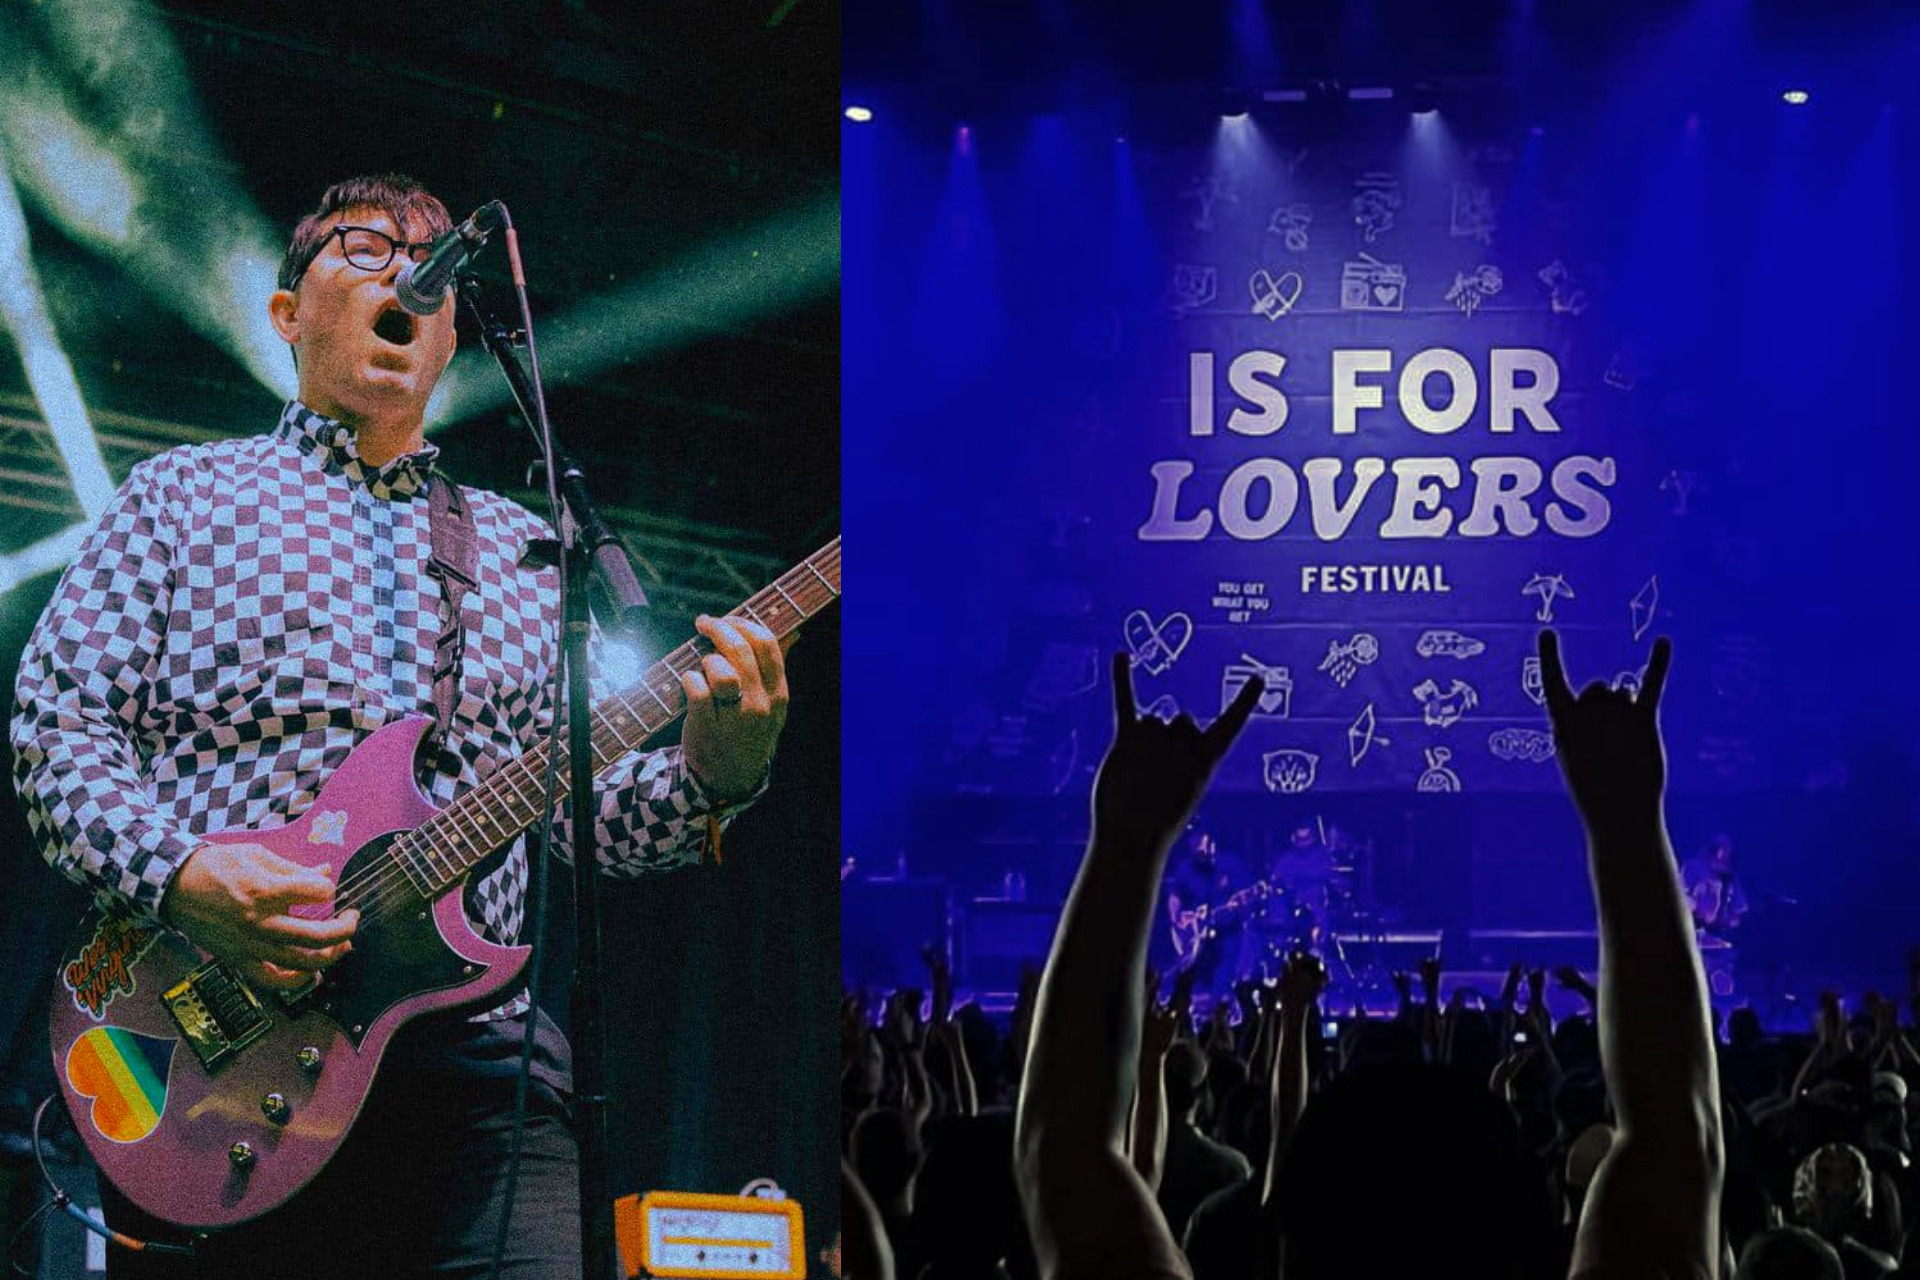 El festival “Is For Lovers” de Hawthorne Heights se expande a ocho ubicaciones en 2023